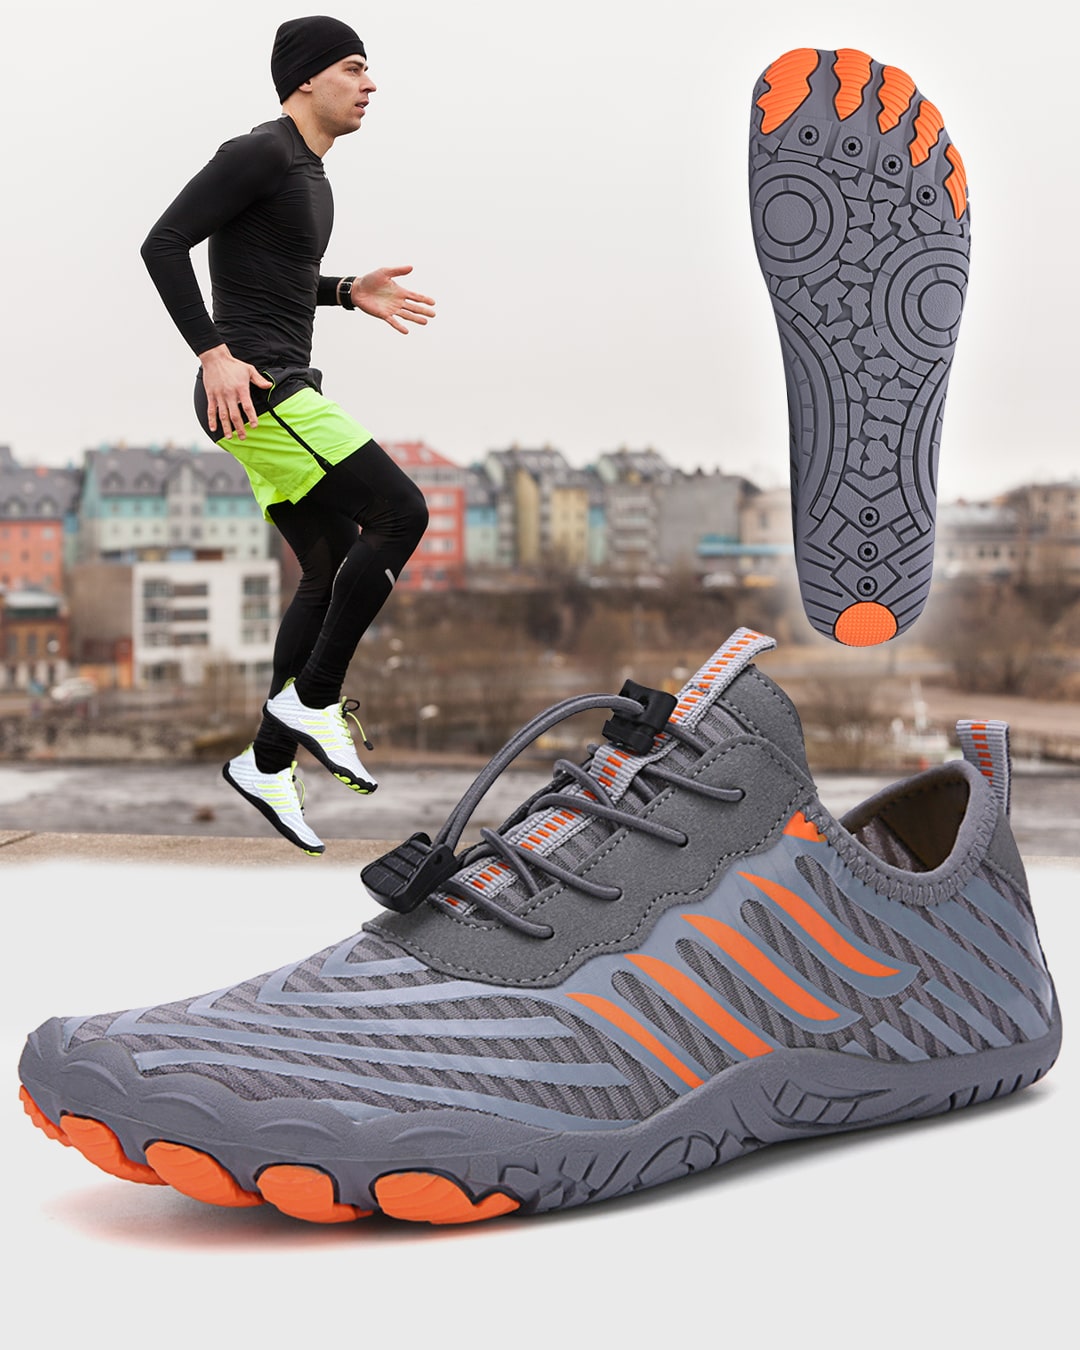 ActivePro™ Barefoot Shoes Breathable Zero Drop Sole, Durable Non-Slip Design